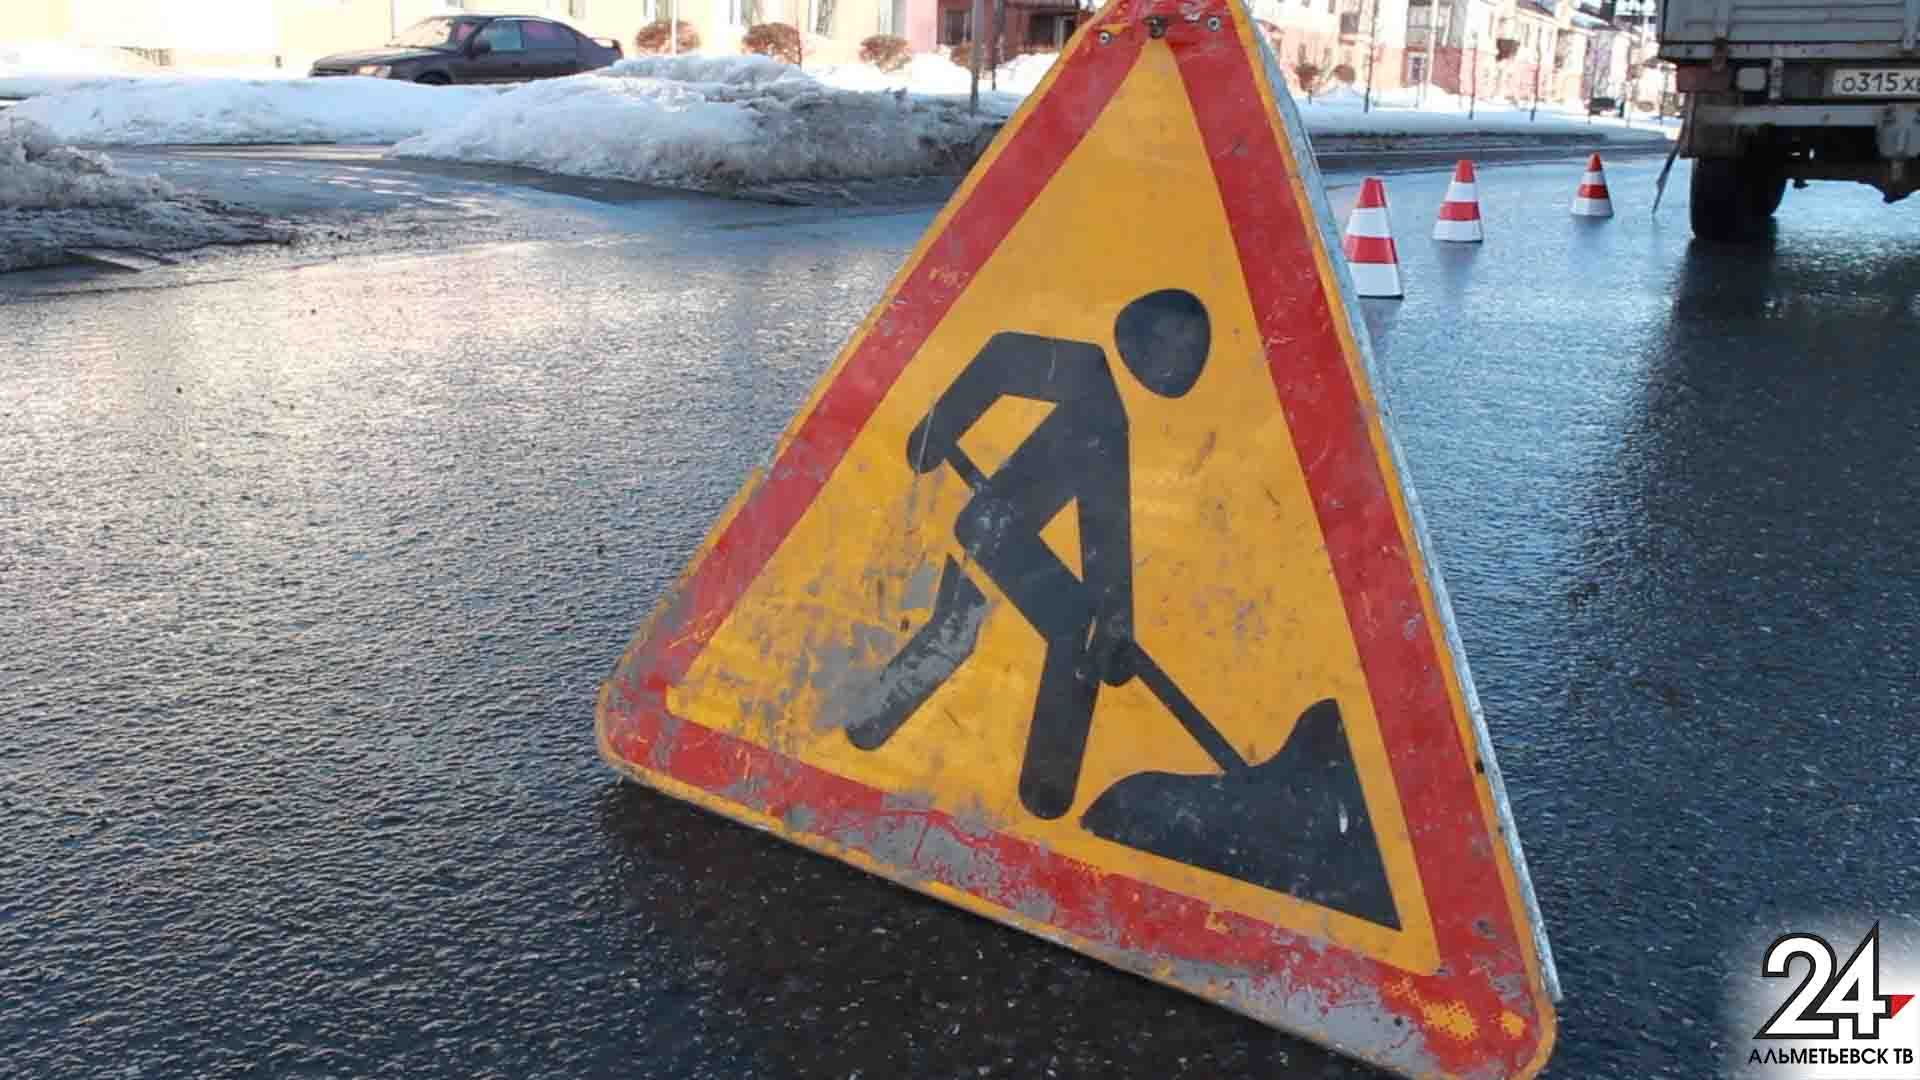 Госстройнадзор РТ начал проверки качества отремонтированных дорог по поручению Президента РТ